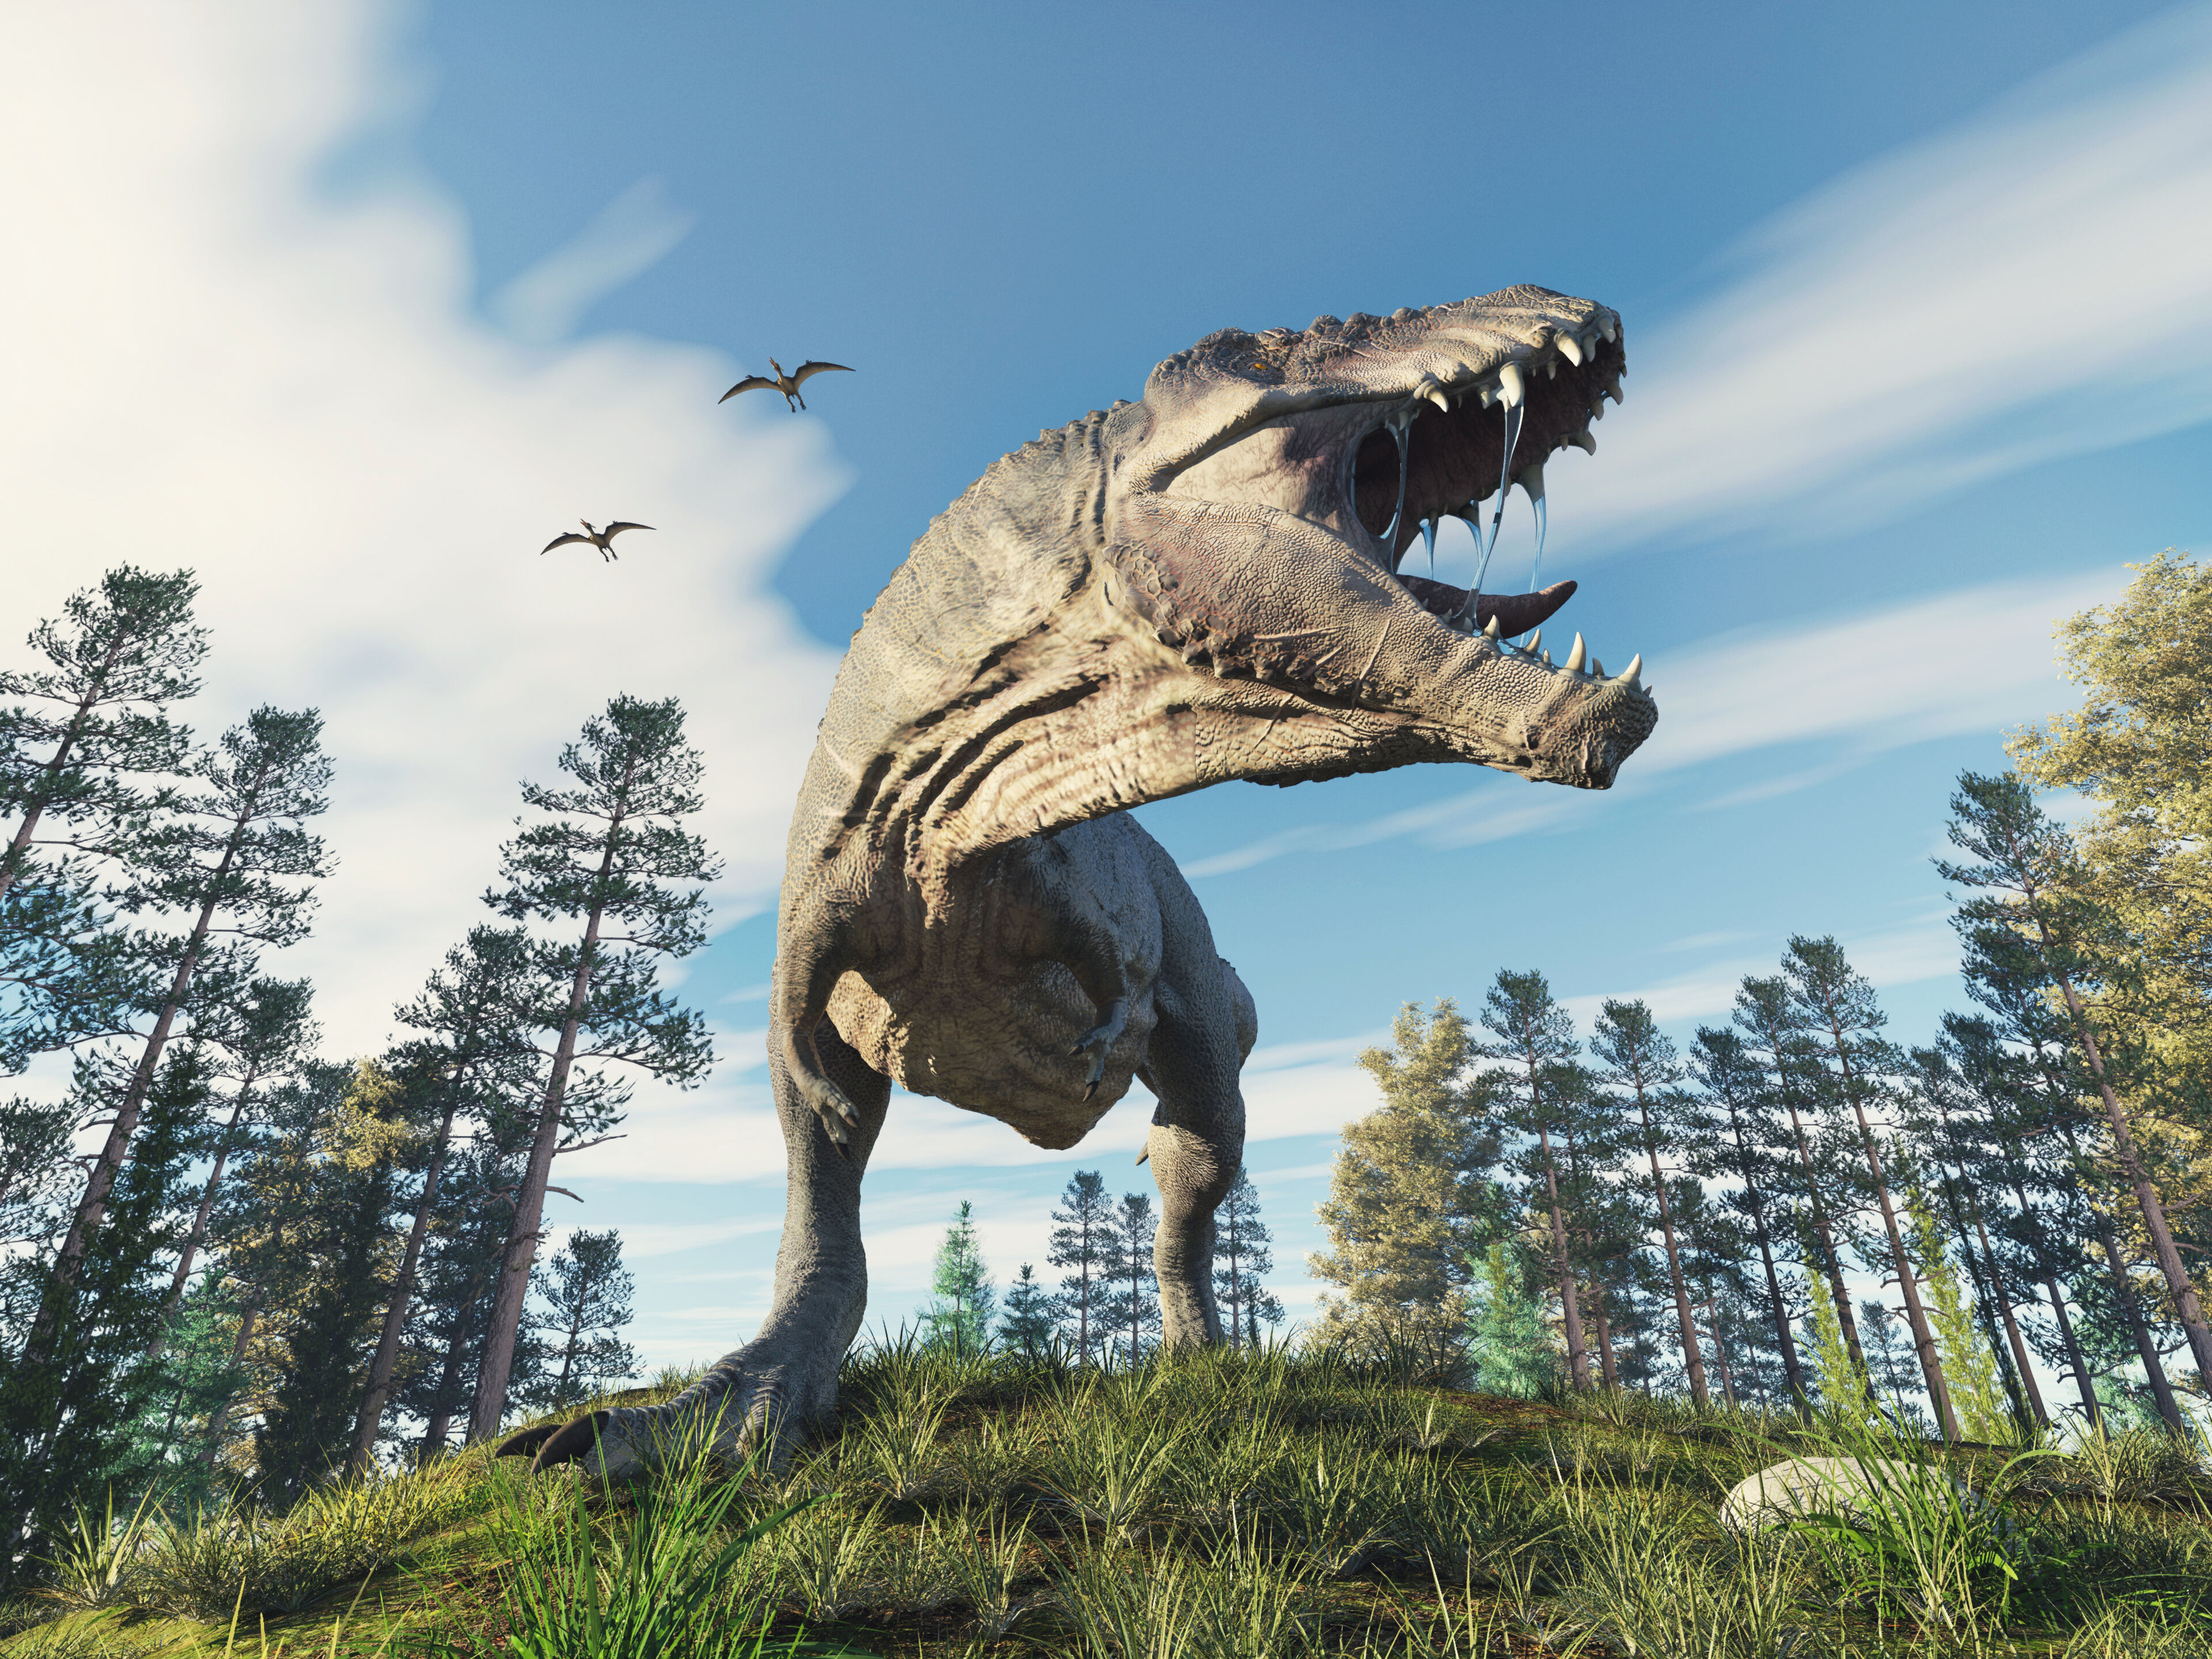 Representación vívida de un Tyrannosaurus Rex rugiendo en medio de un bosque frondoso bajo un cielo azul despejado, con pterosaurios volando a lo lejos.